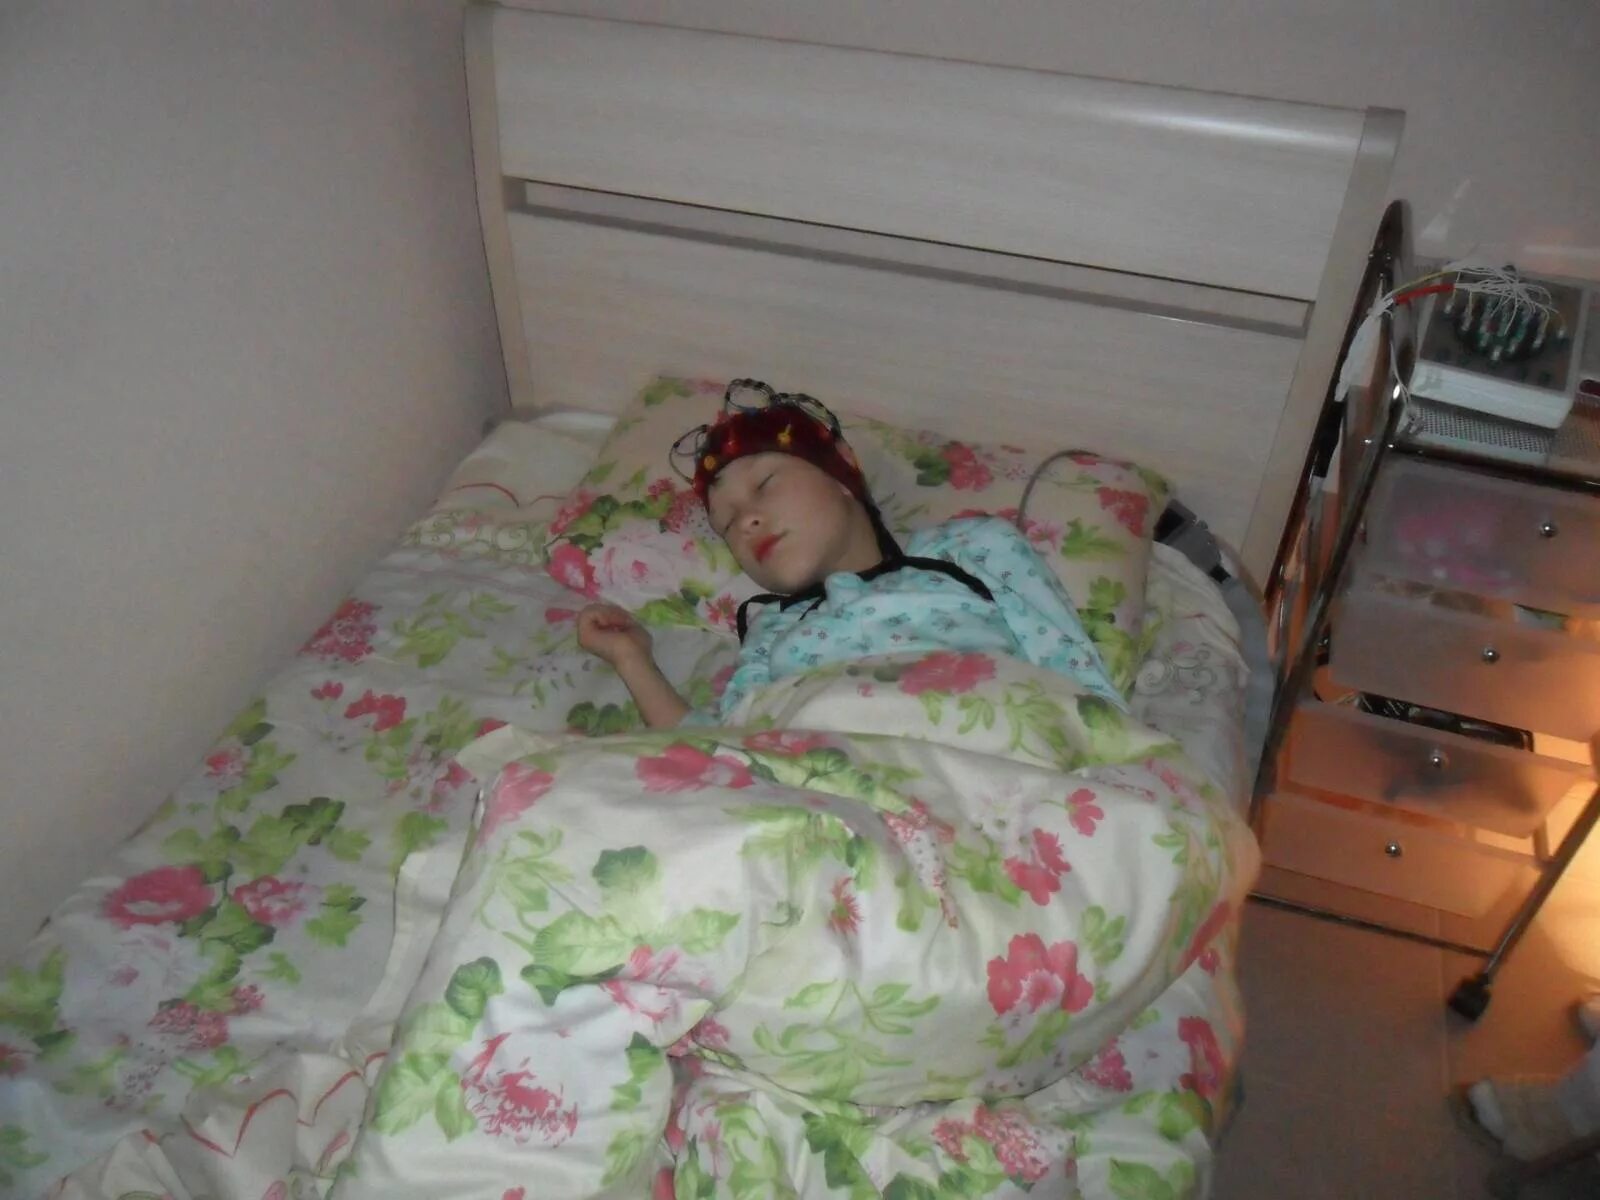 Видео ээг ночной. ЭЭГ видеомониторинг дневного сна. ЭЭГ мониторинг ночного сна у детей. ЭЭГ видеомониторинг ночного сна. ЭЭГ ВМ ночного сна.